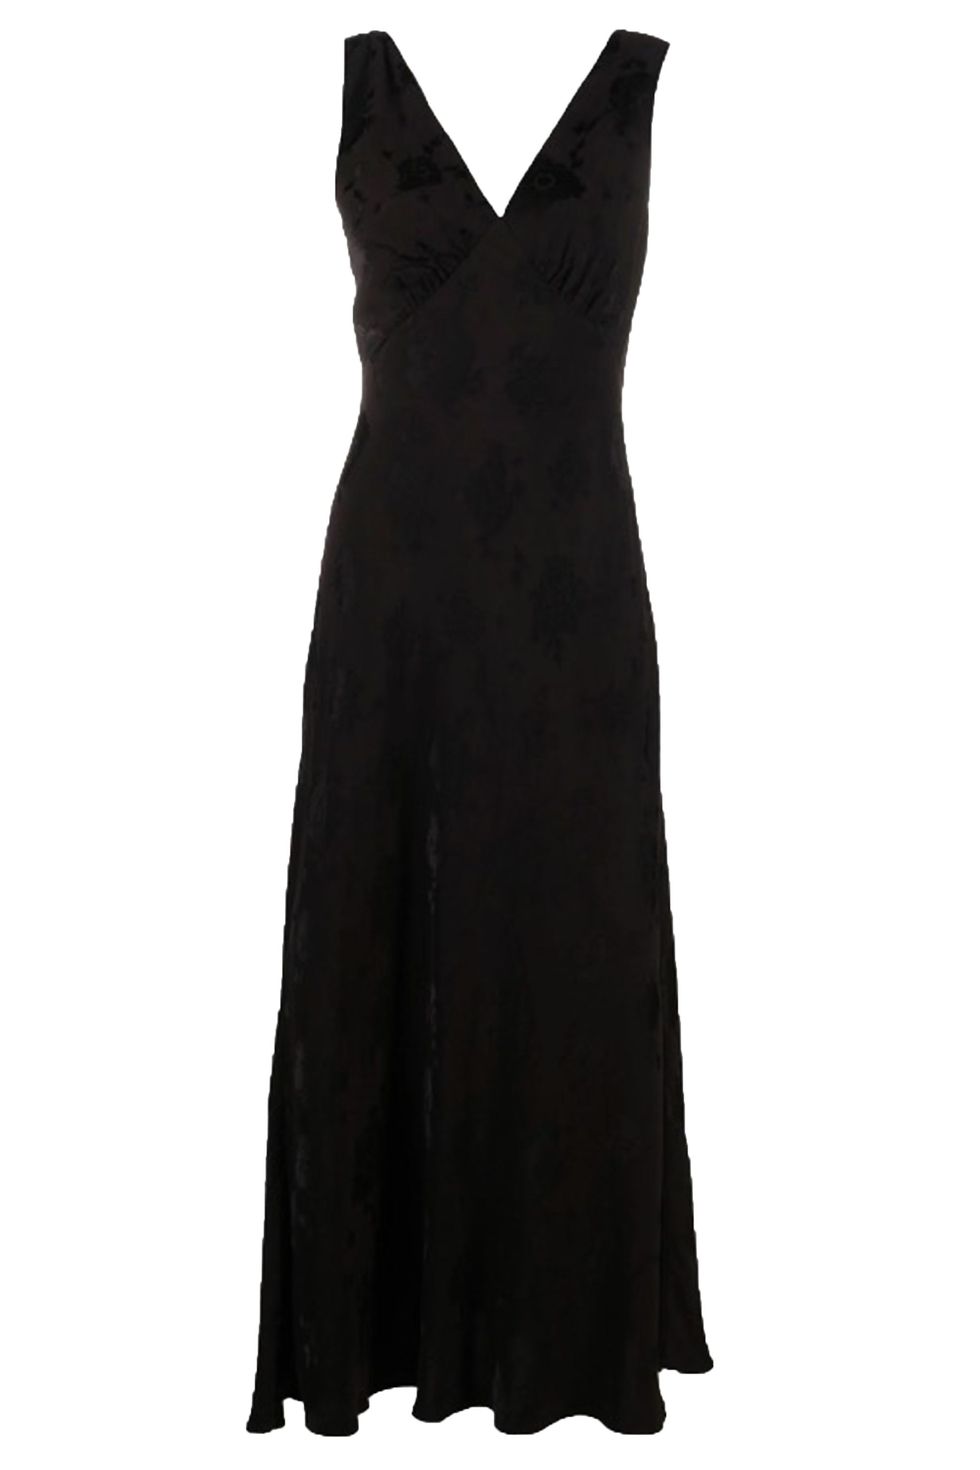 Zoë Kravitz wears a black The Row dress to Tiffany party in LA